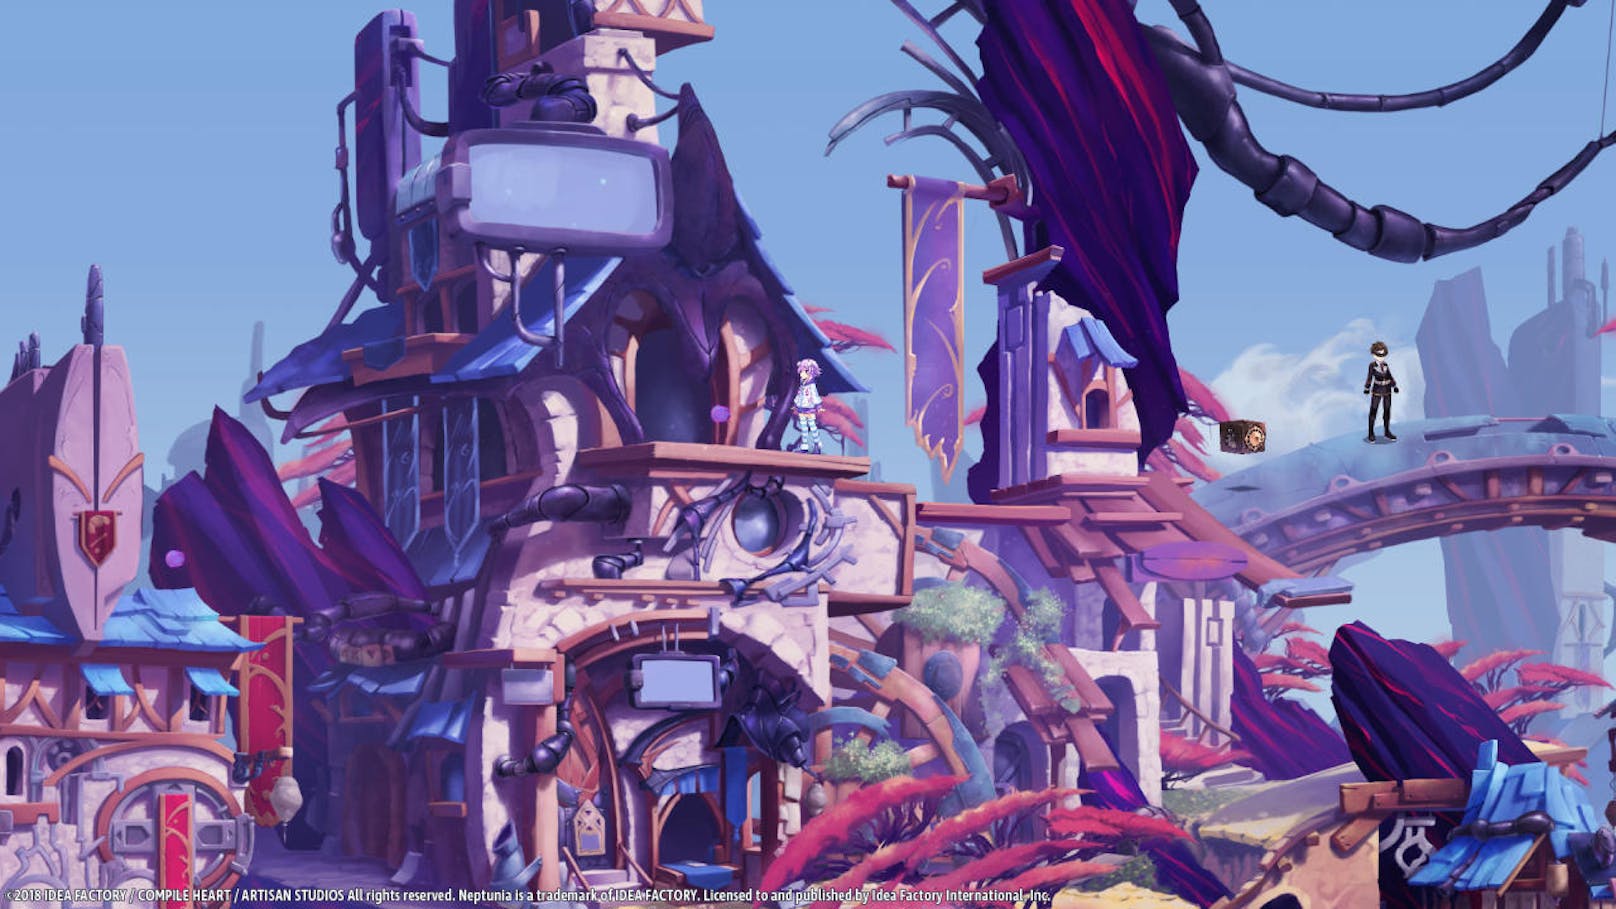 Reef Entertainment freut sich, bekannt zu geben, dass das JRPG Super Neptunia RPG in Europa im Sommer für PlayStation 4 und Nintendo Switch erscheint. Die selbsternannte Heldin Neptune erwacht in einer vertrauten Umgebung ohne Erinnerungen außer die an ihren Namen. Mit der Hilfe eines Mädchens namens Chrome sowie drei anderen bekannten Gesichtern aus dem Neptunia-Universum, macht sich Neptune auf der Suche nach ihren Erinnerungen. Die Welt, in der sie sich befinden, wird jedoch von Feinden angegriffen, die die Welt wieder in eine 2D-Zeit zurückbringen wollen. Der Kampf um die 3D-Zukunft beginnt!